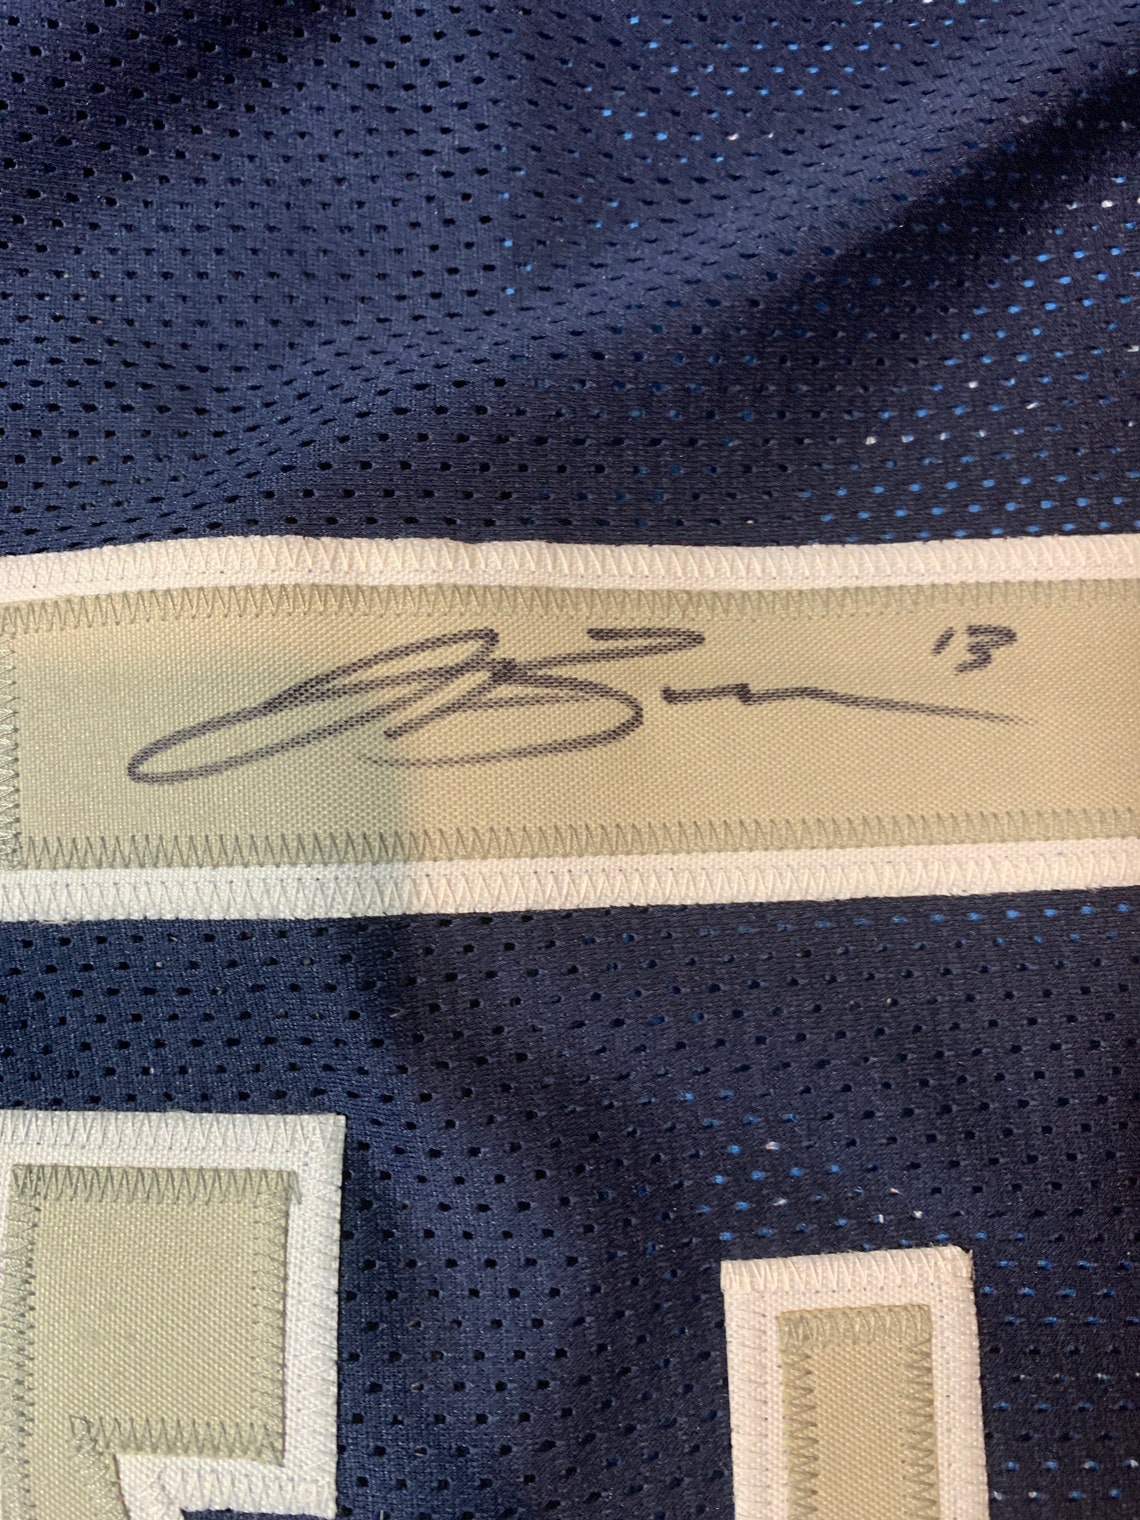 Jalen Brunson Autograph Signed Mavericks Blue XL Jersey | Etsy